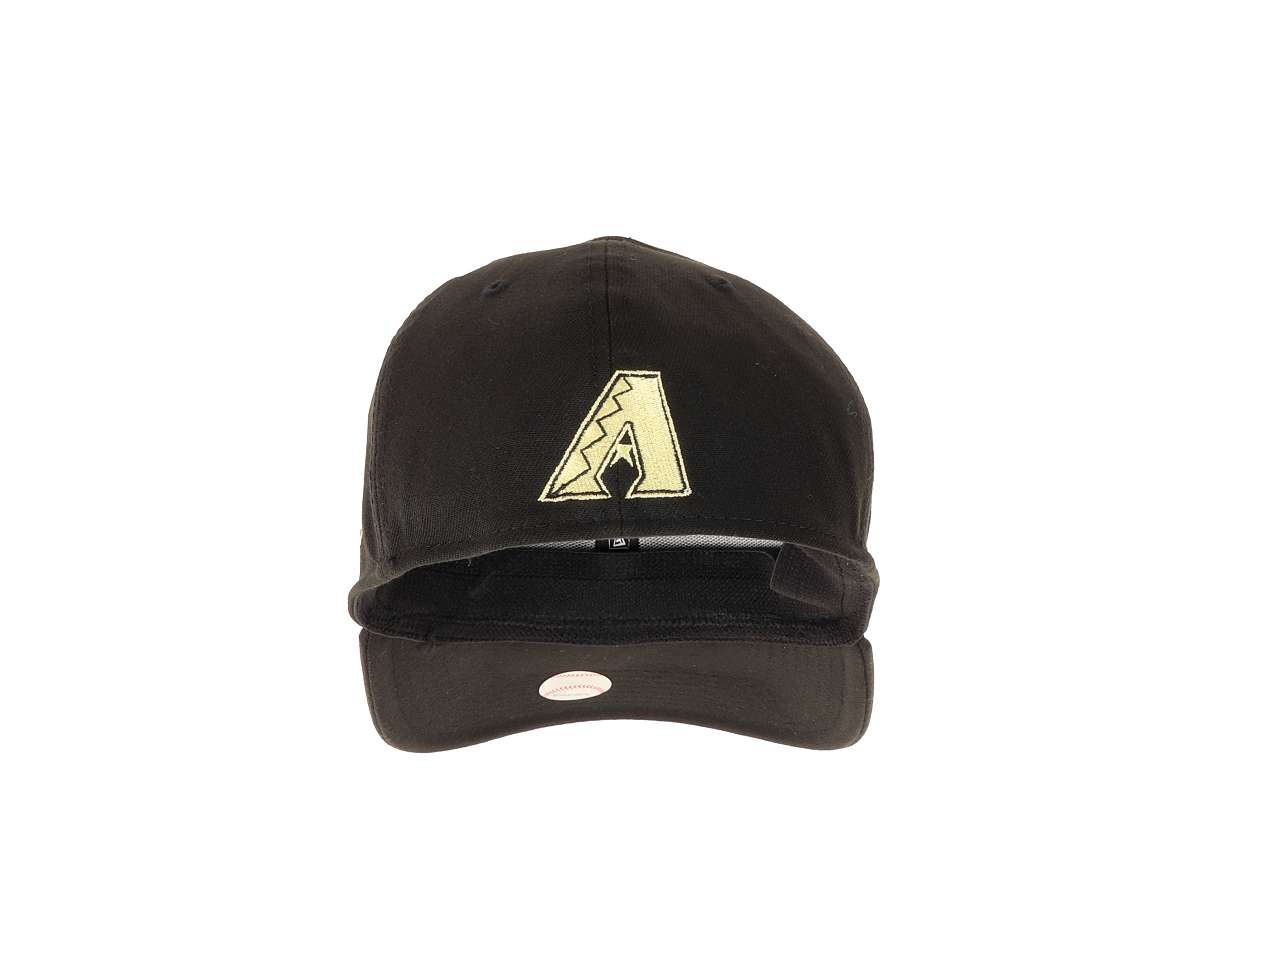 Arizona Diamondbacks Alternate 2 Logo MLB Black 39Thirty Stretch Cap New Era